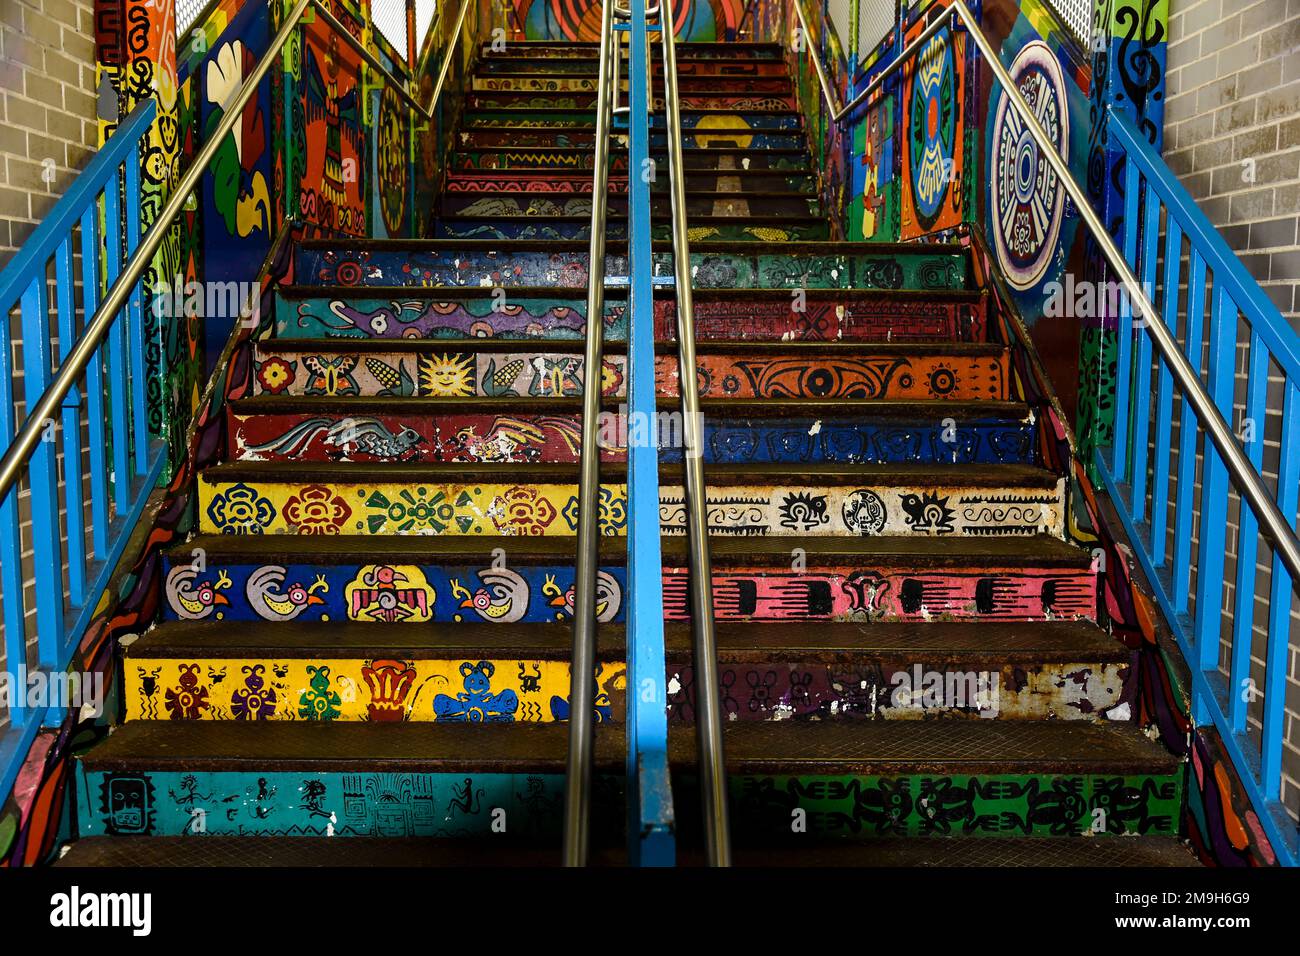 Escalier coloré à la gare, Chicago, Illinois, États-Unis Banque D'Images